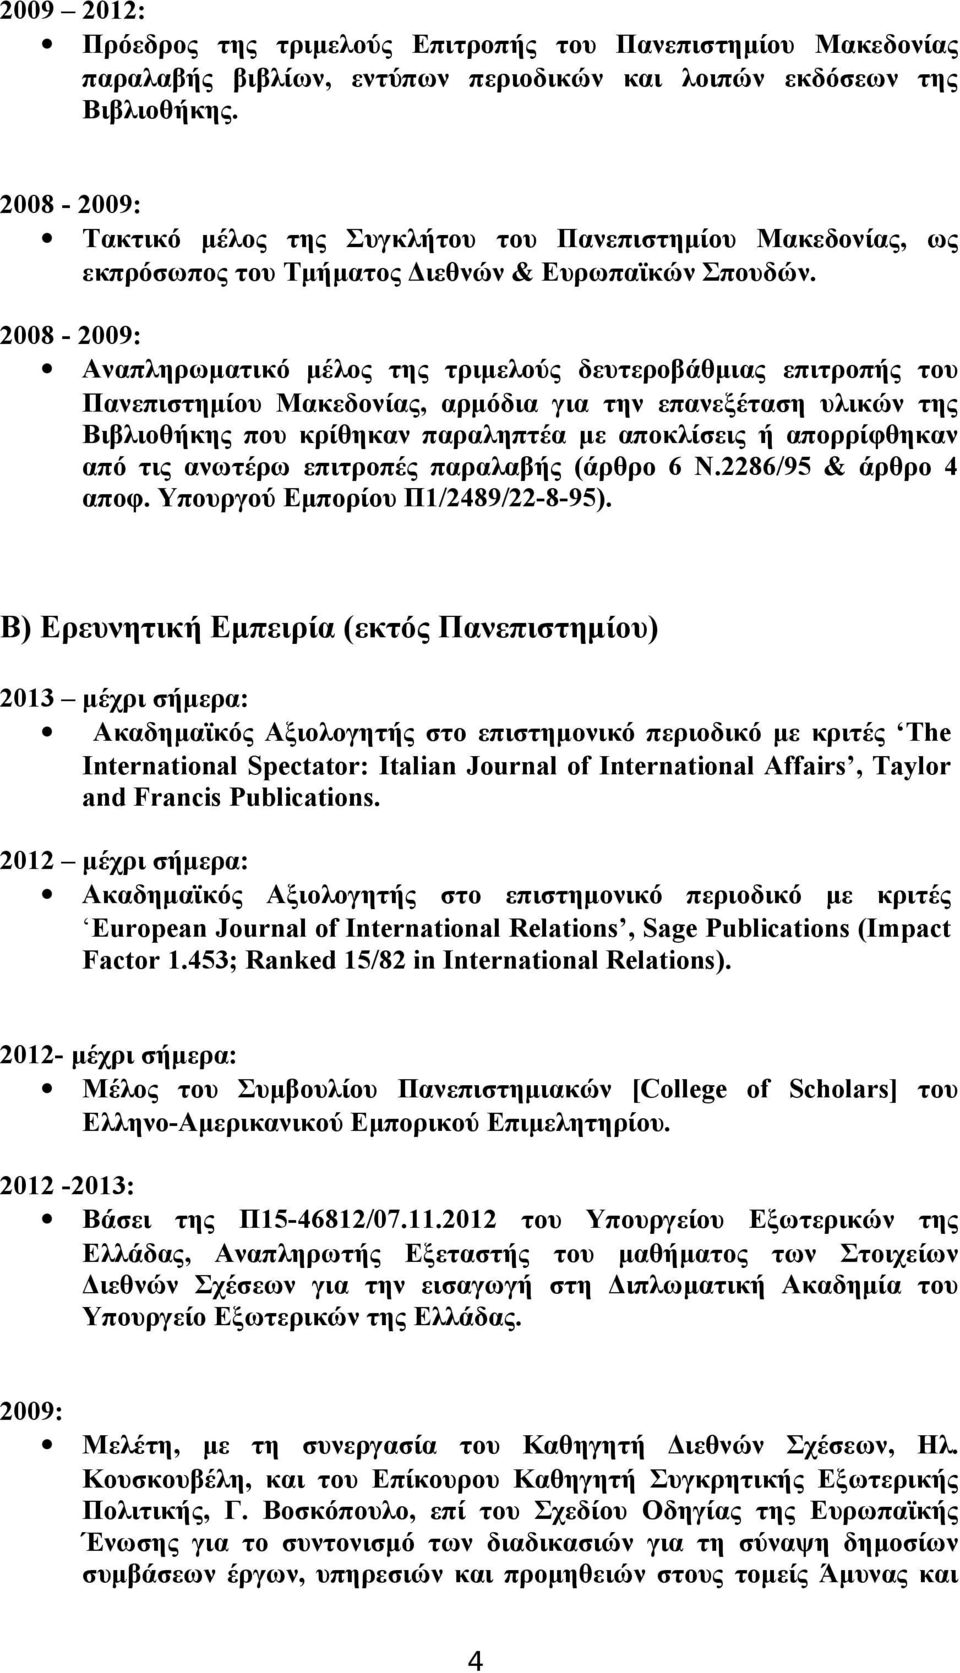 2008-2009: Αναπληρωματικό μέλος της τριμελούς δευτεροβάθμιας επιτροπής του Πανεπιστημίου Μακεδονίας, αρμόδια για την επανεξέταση υλικών της Βιβλιοθήκης που κρίθηκαν παραληπτέα με αποκλίσεις ή